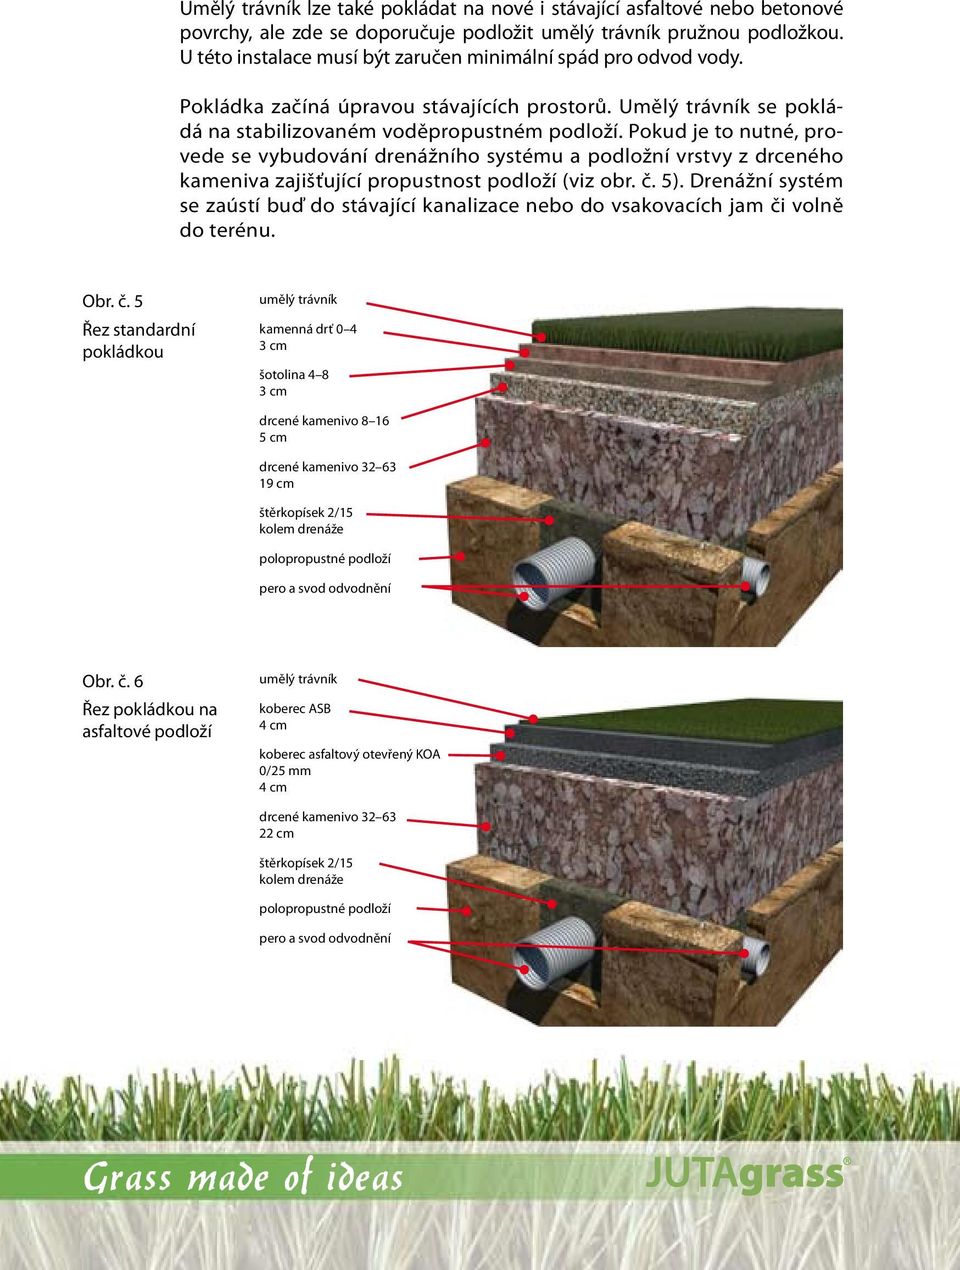 Pokud je to nutné, provede se vybudování drenážního systému a podložní vrstvy z drceného kameniva zajišťující propustnost podloží (viz obr. č. 5).